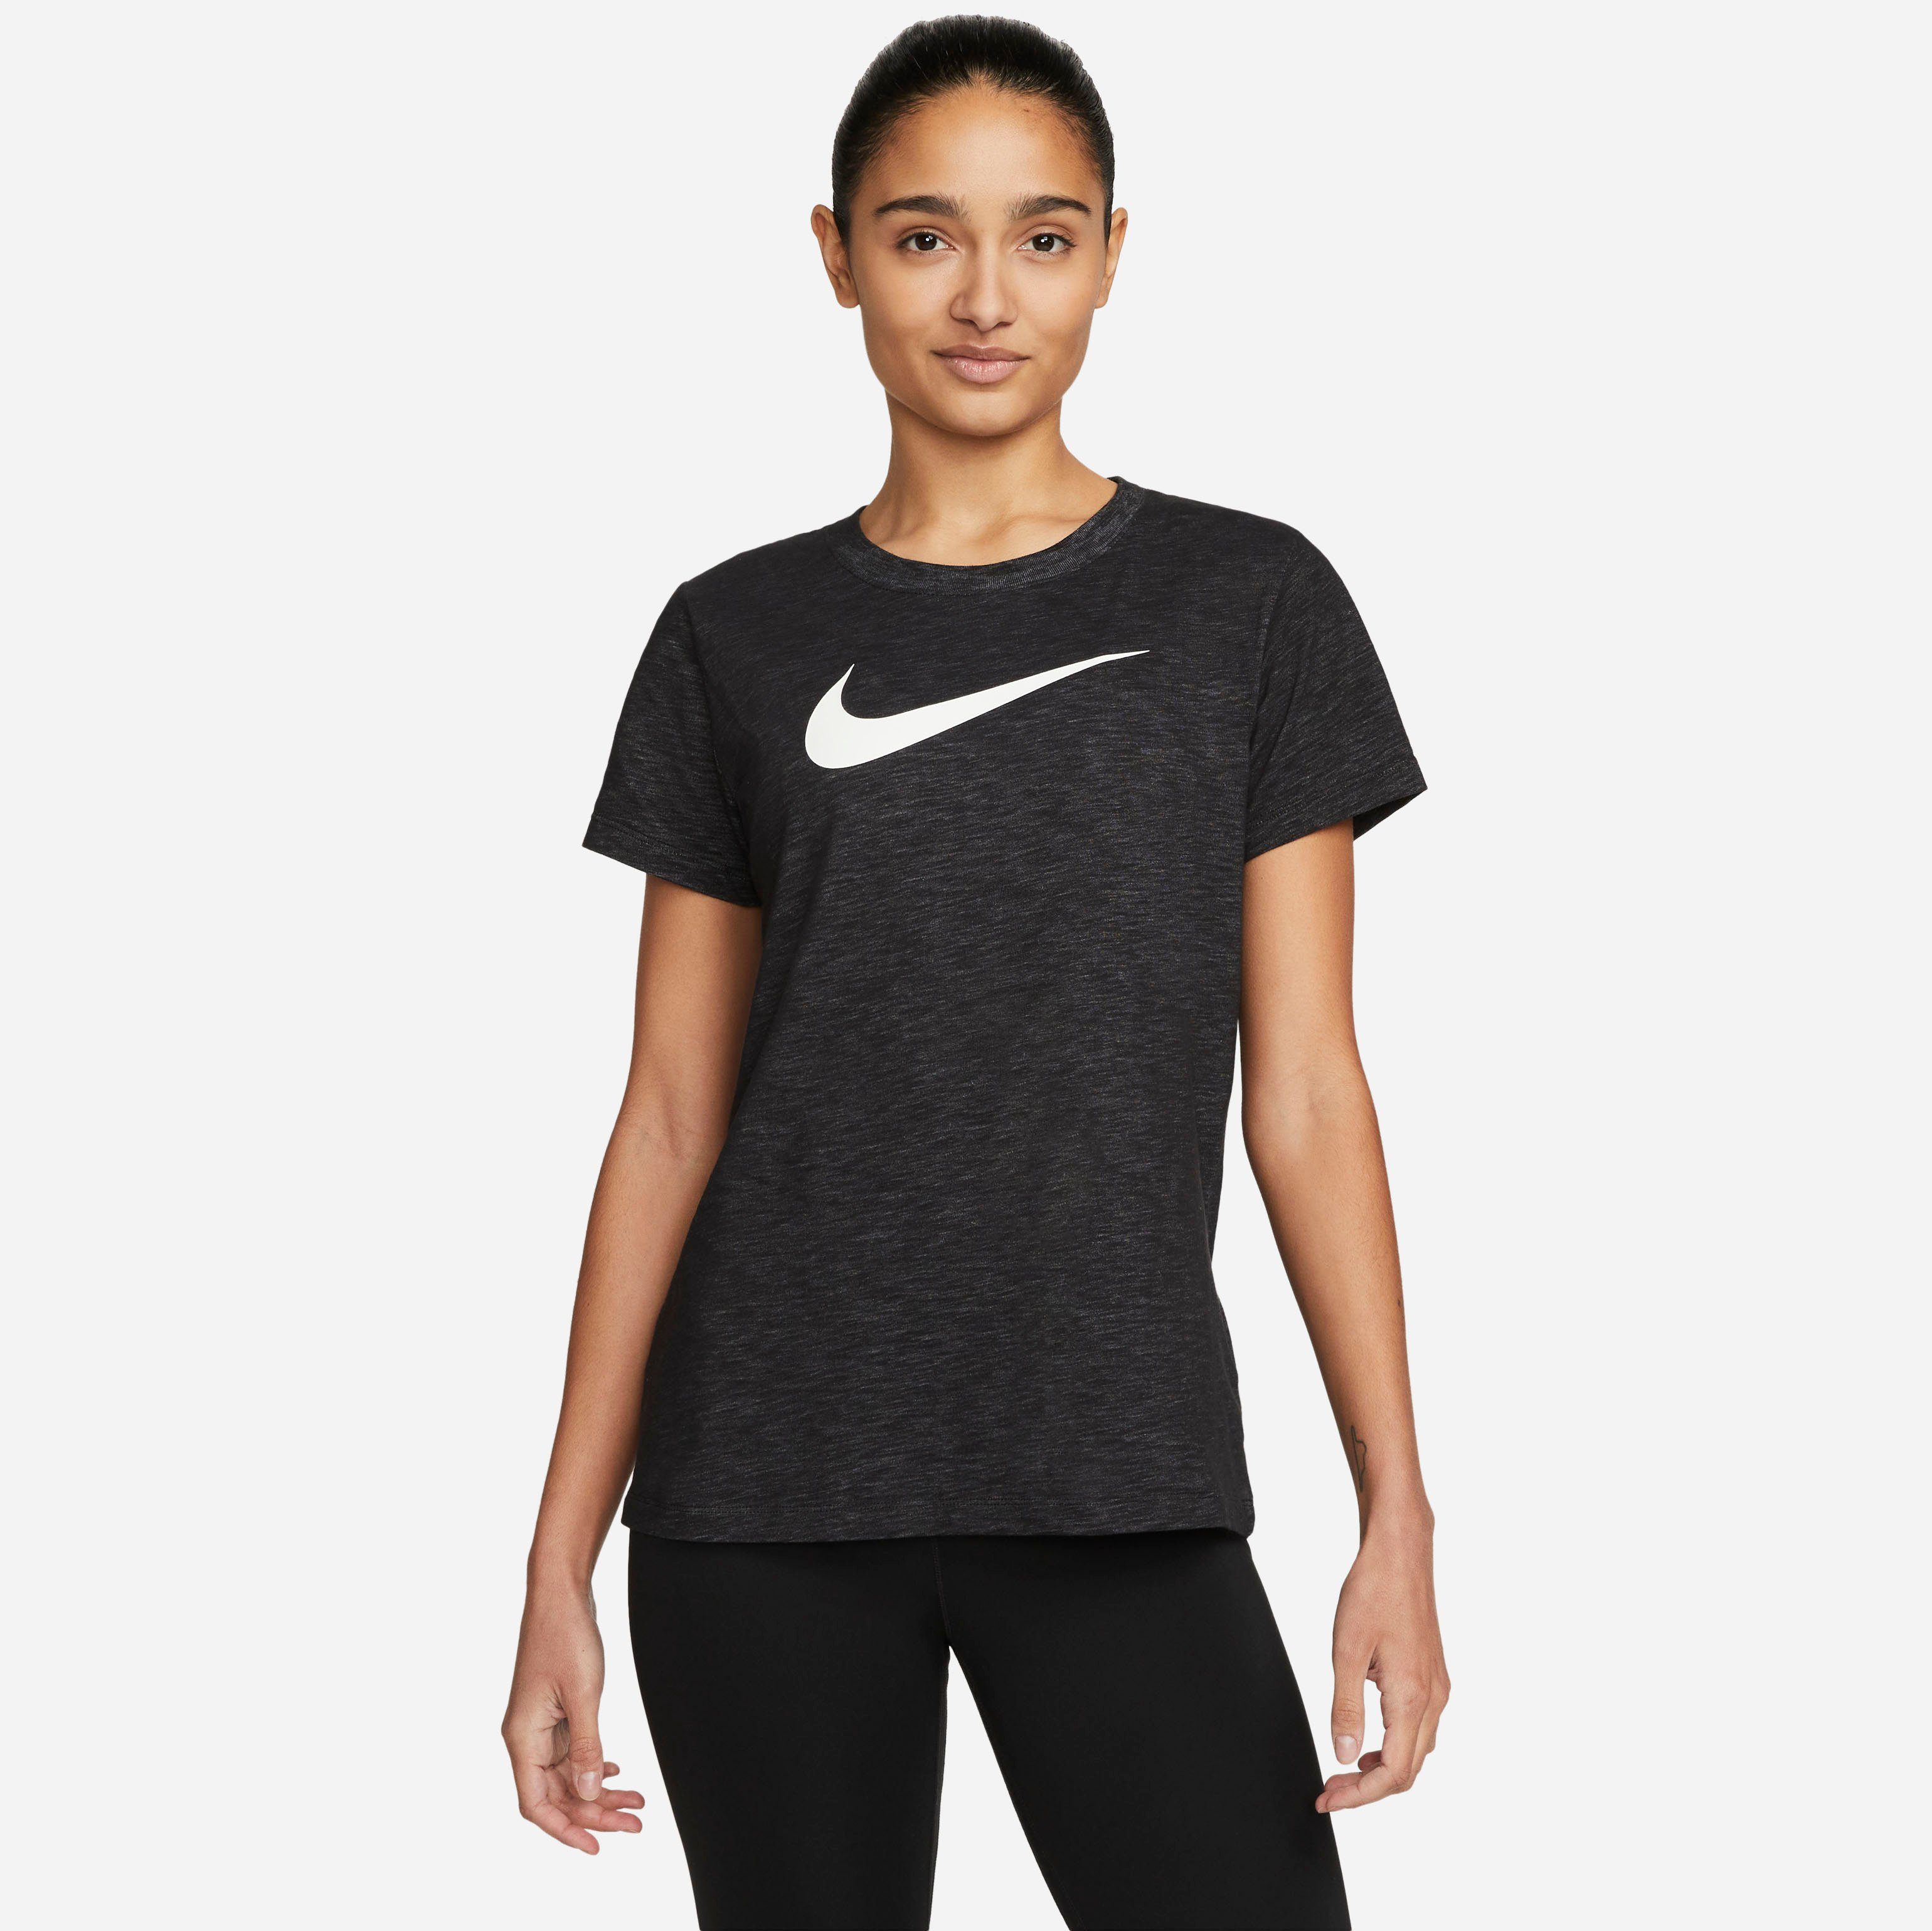 Nike T-shirt Dri-FIT Women's Training T-Shirt